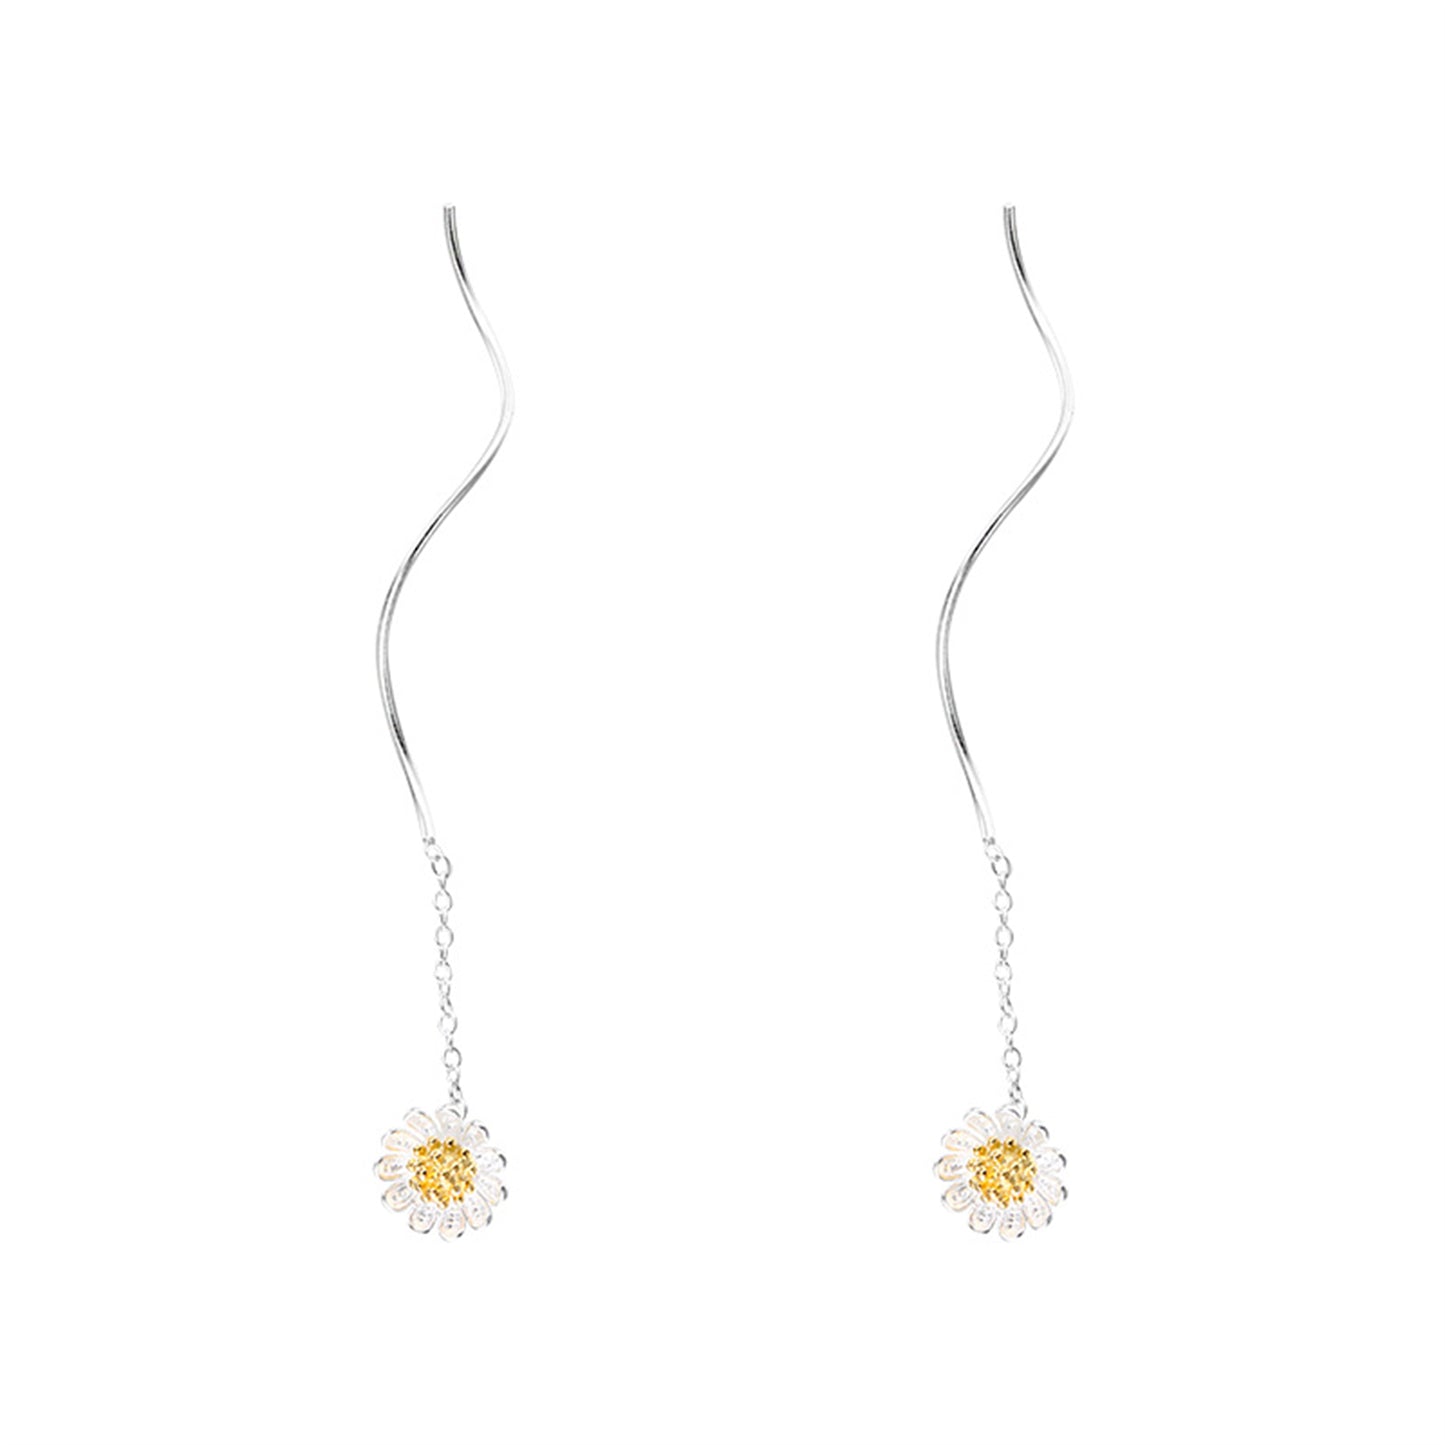 Wave Threader Dangle Earrings in Sterling Silver with Sun Flower Daisy Design - sugarkittenlondon